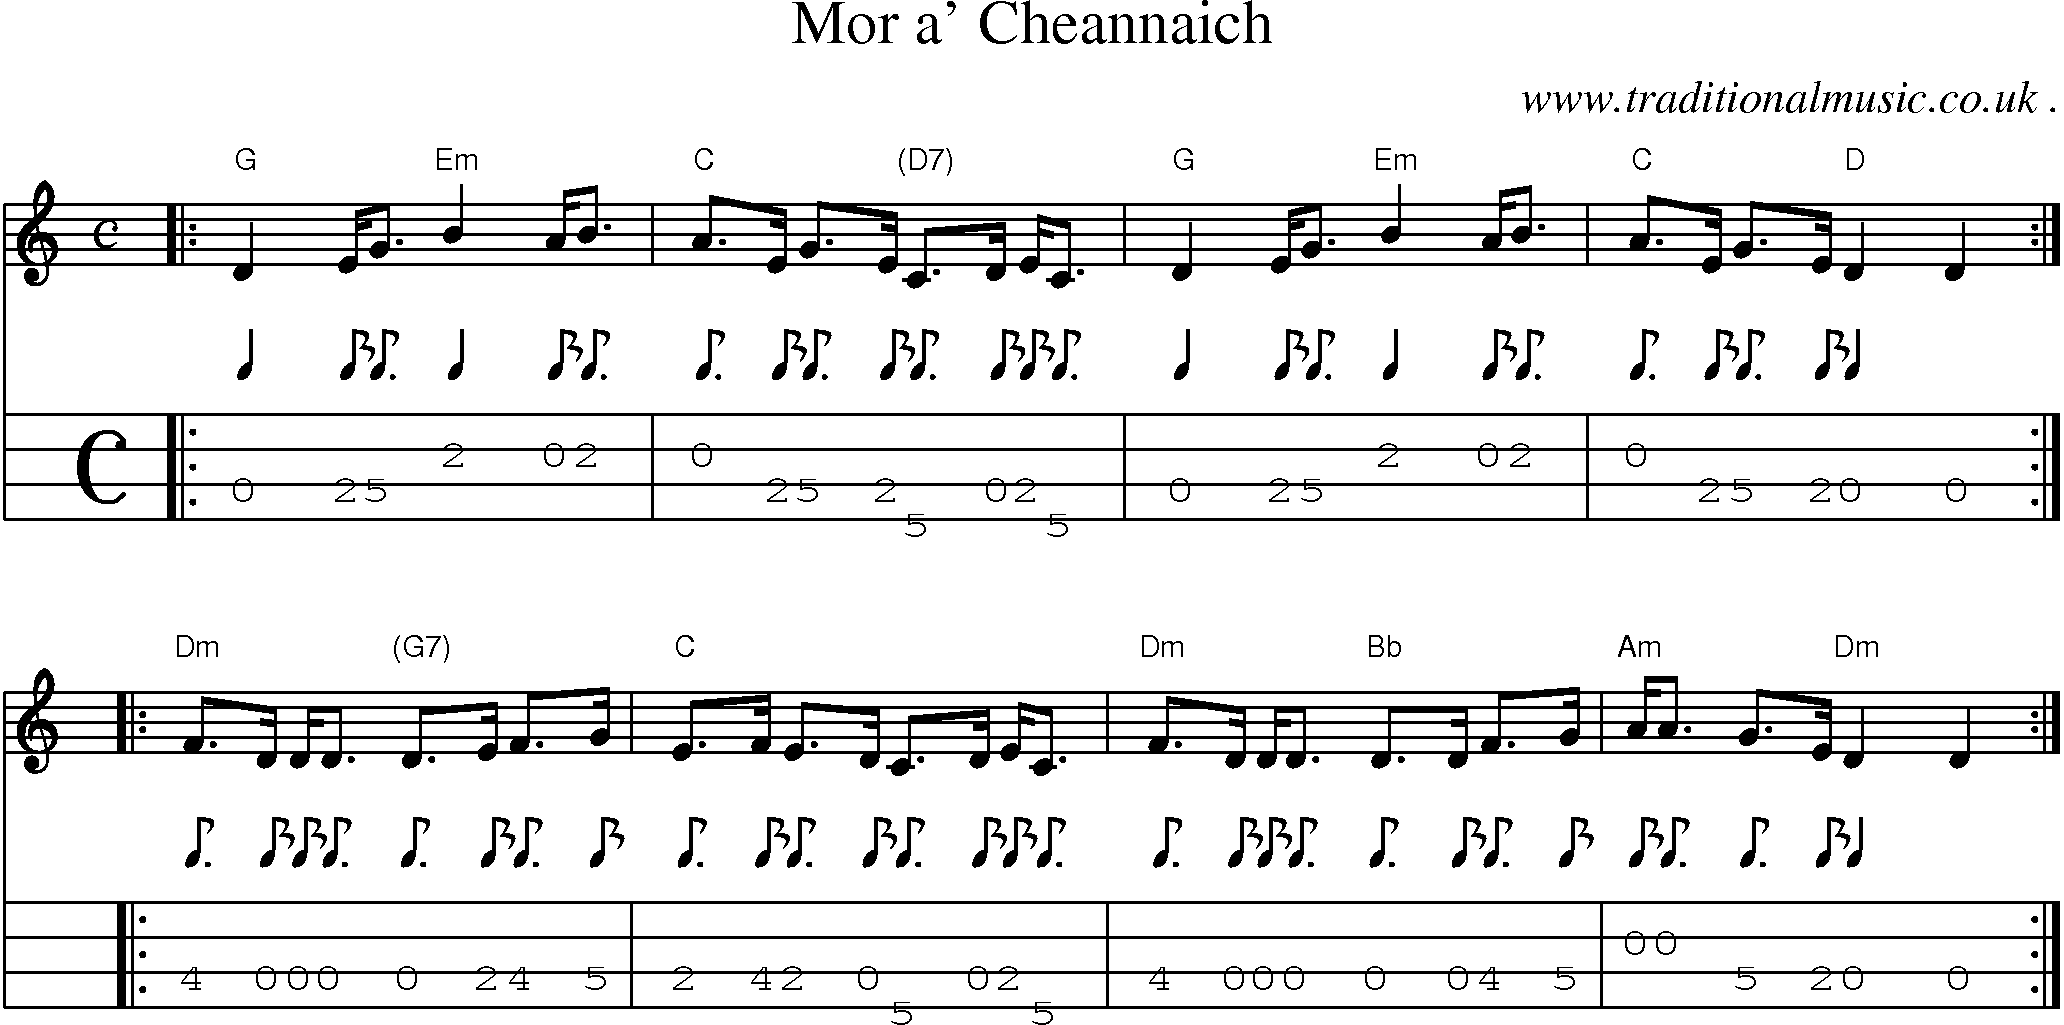 Sheet-music  score, Chords and Mandolin Tabs for Mor A Cheannaich